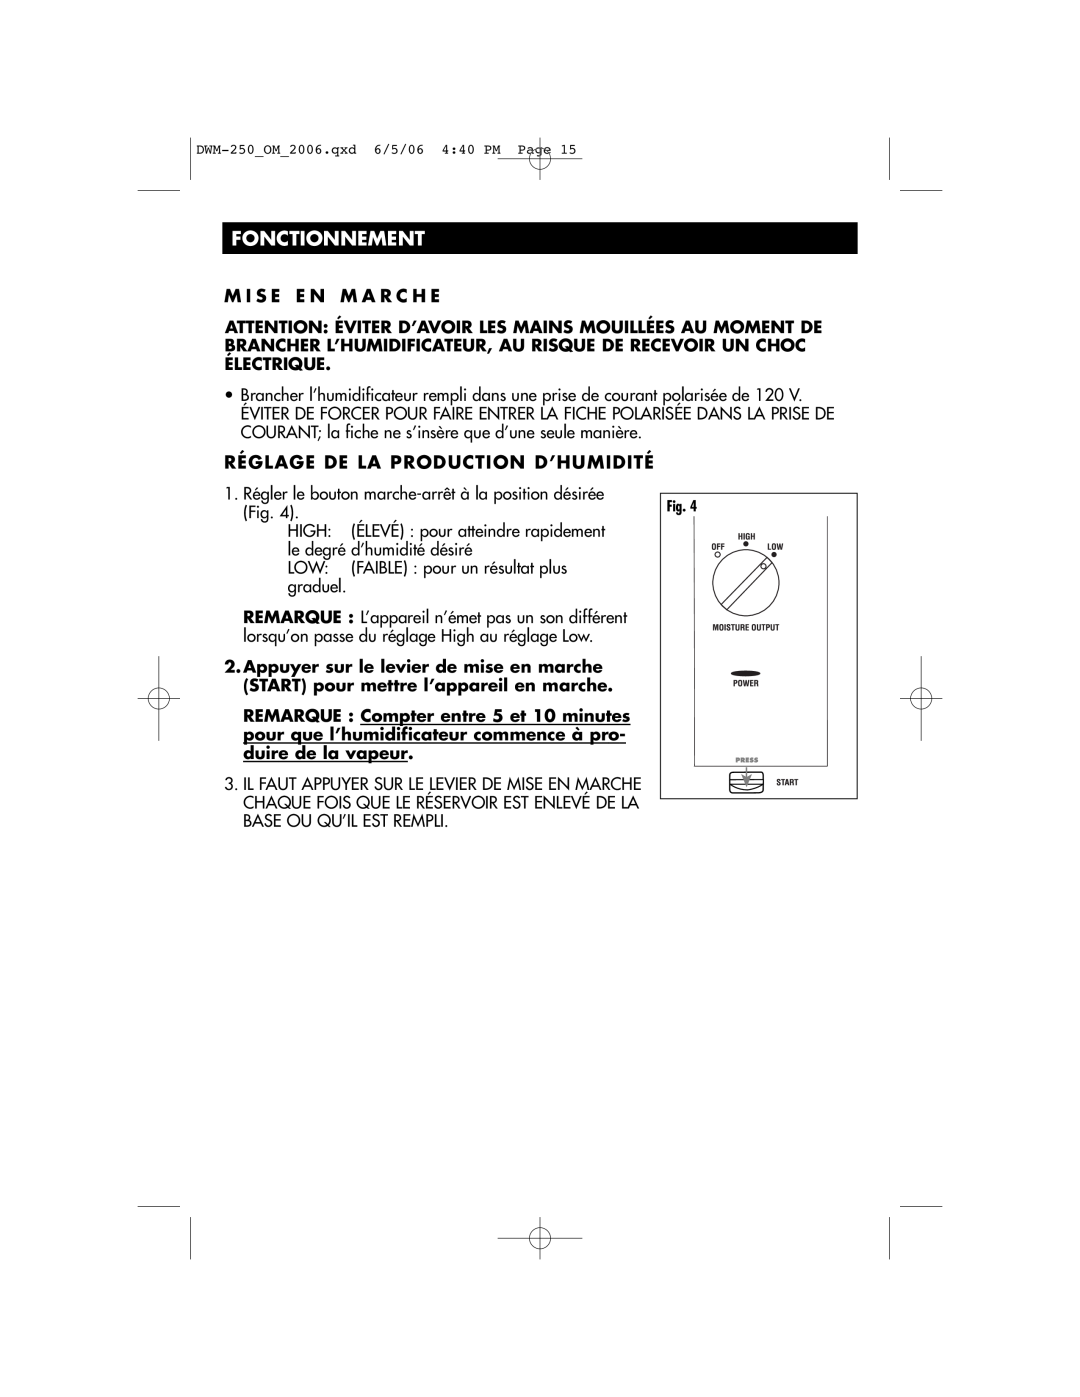 Duracraft DWM-250 owner manual Fonctionnement 